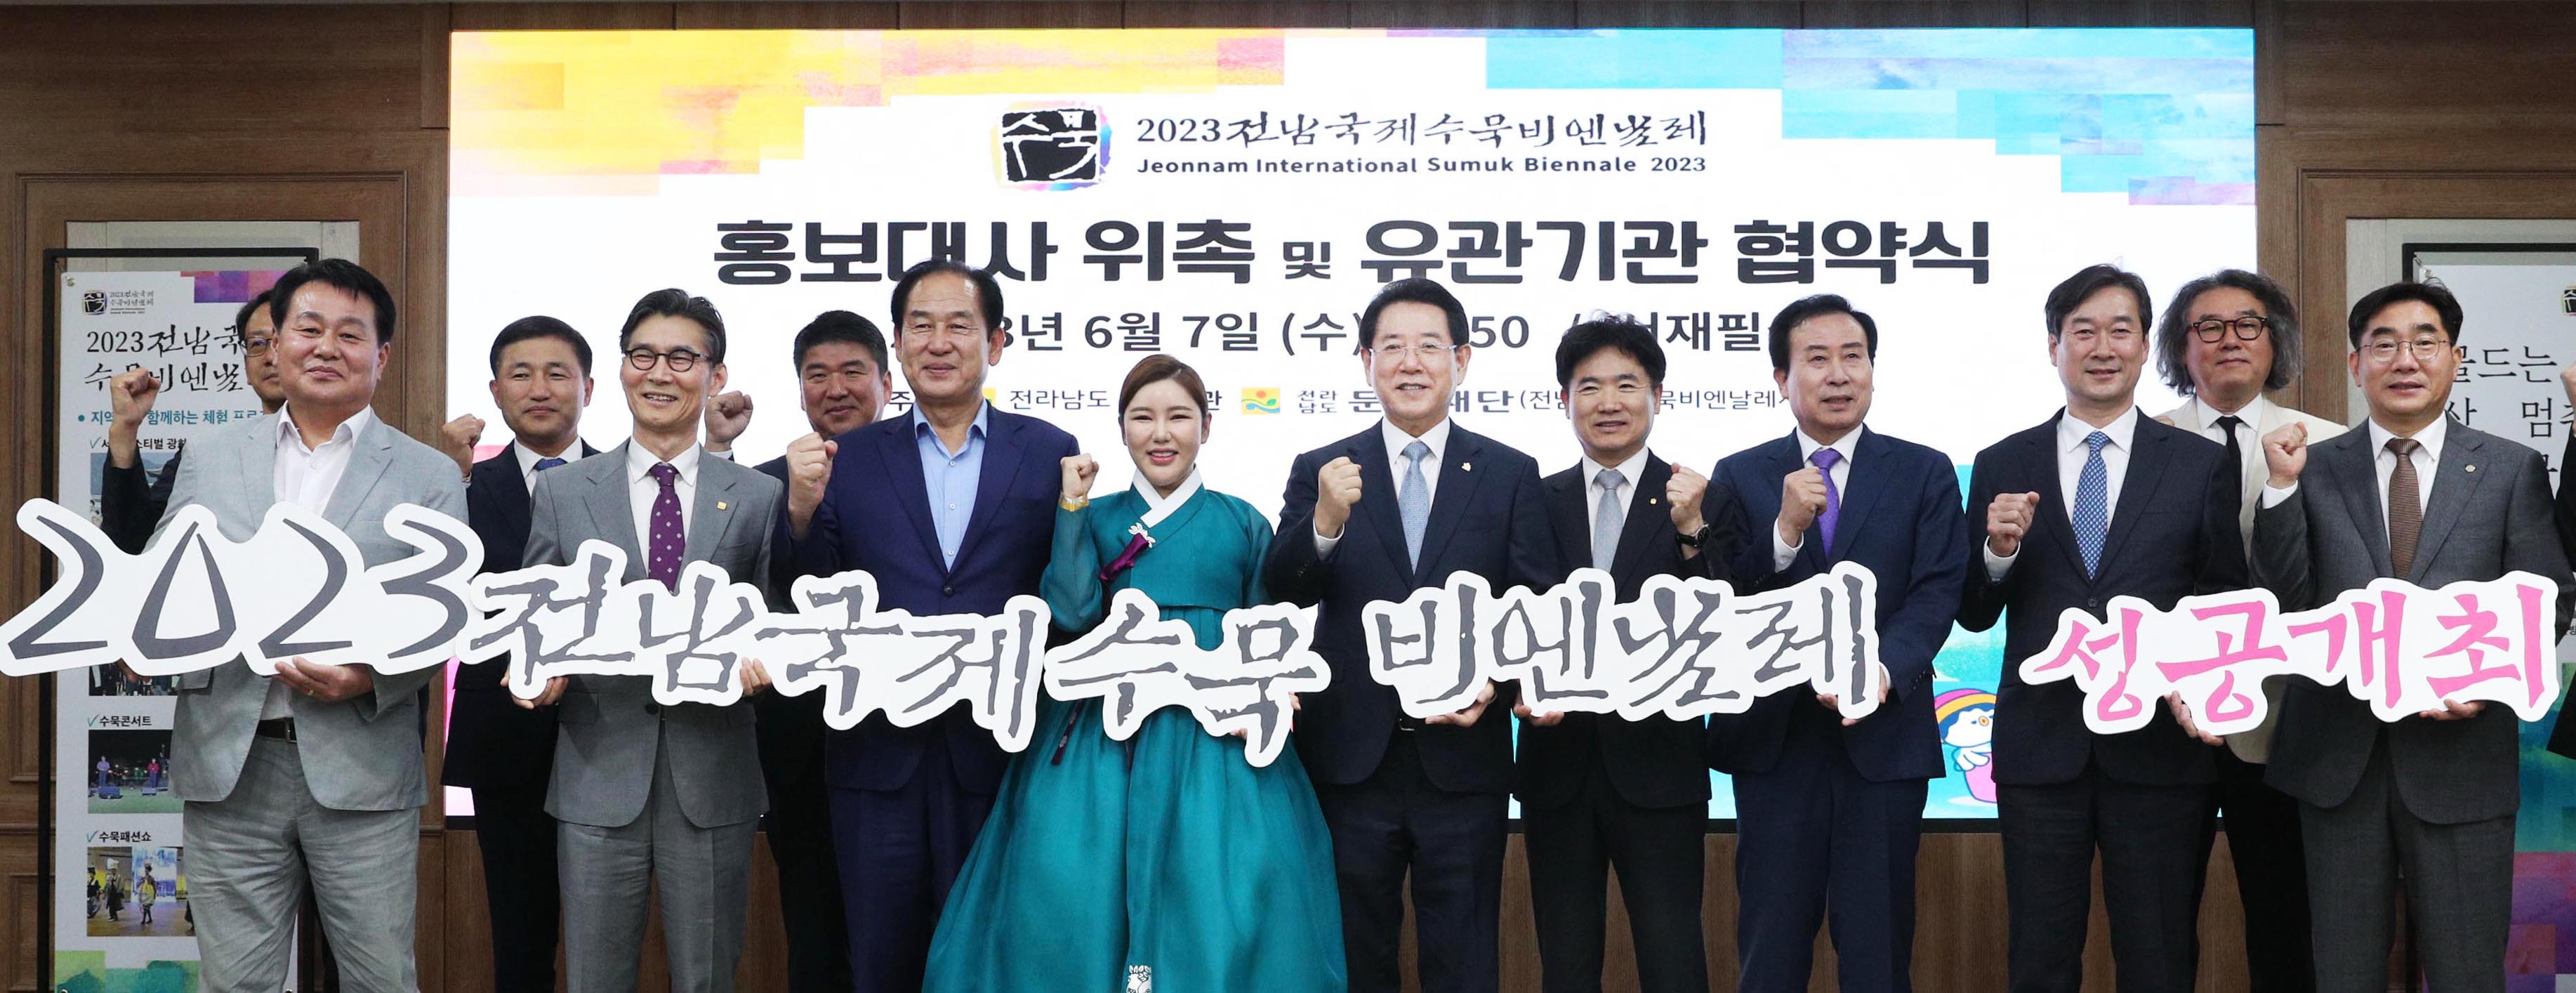 2023 전남국제수묵비엔날레 홍보대사 위촉 및 유관기관 협약식1